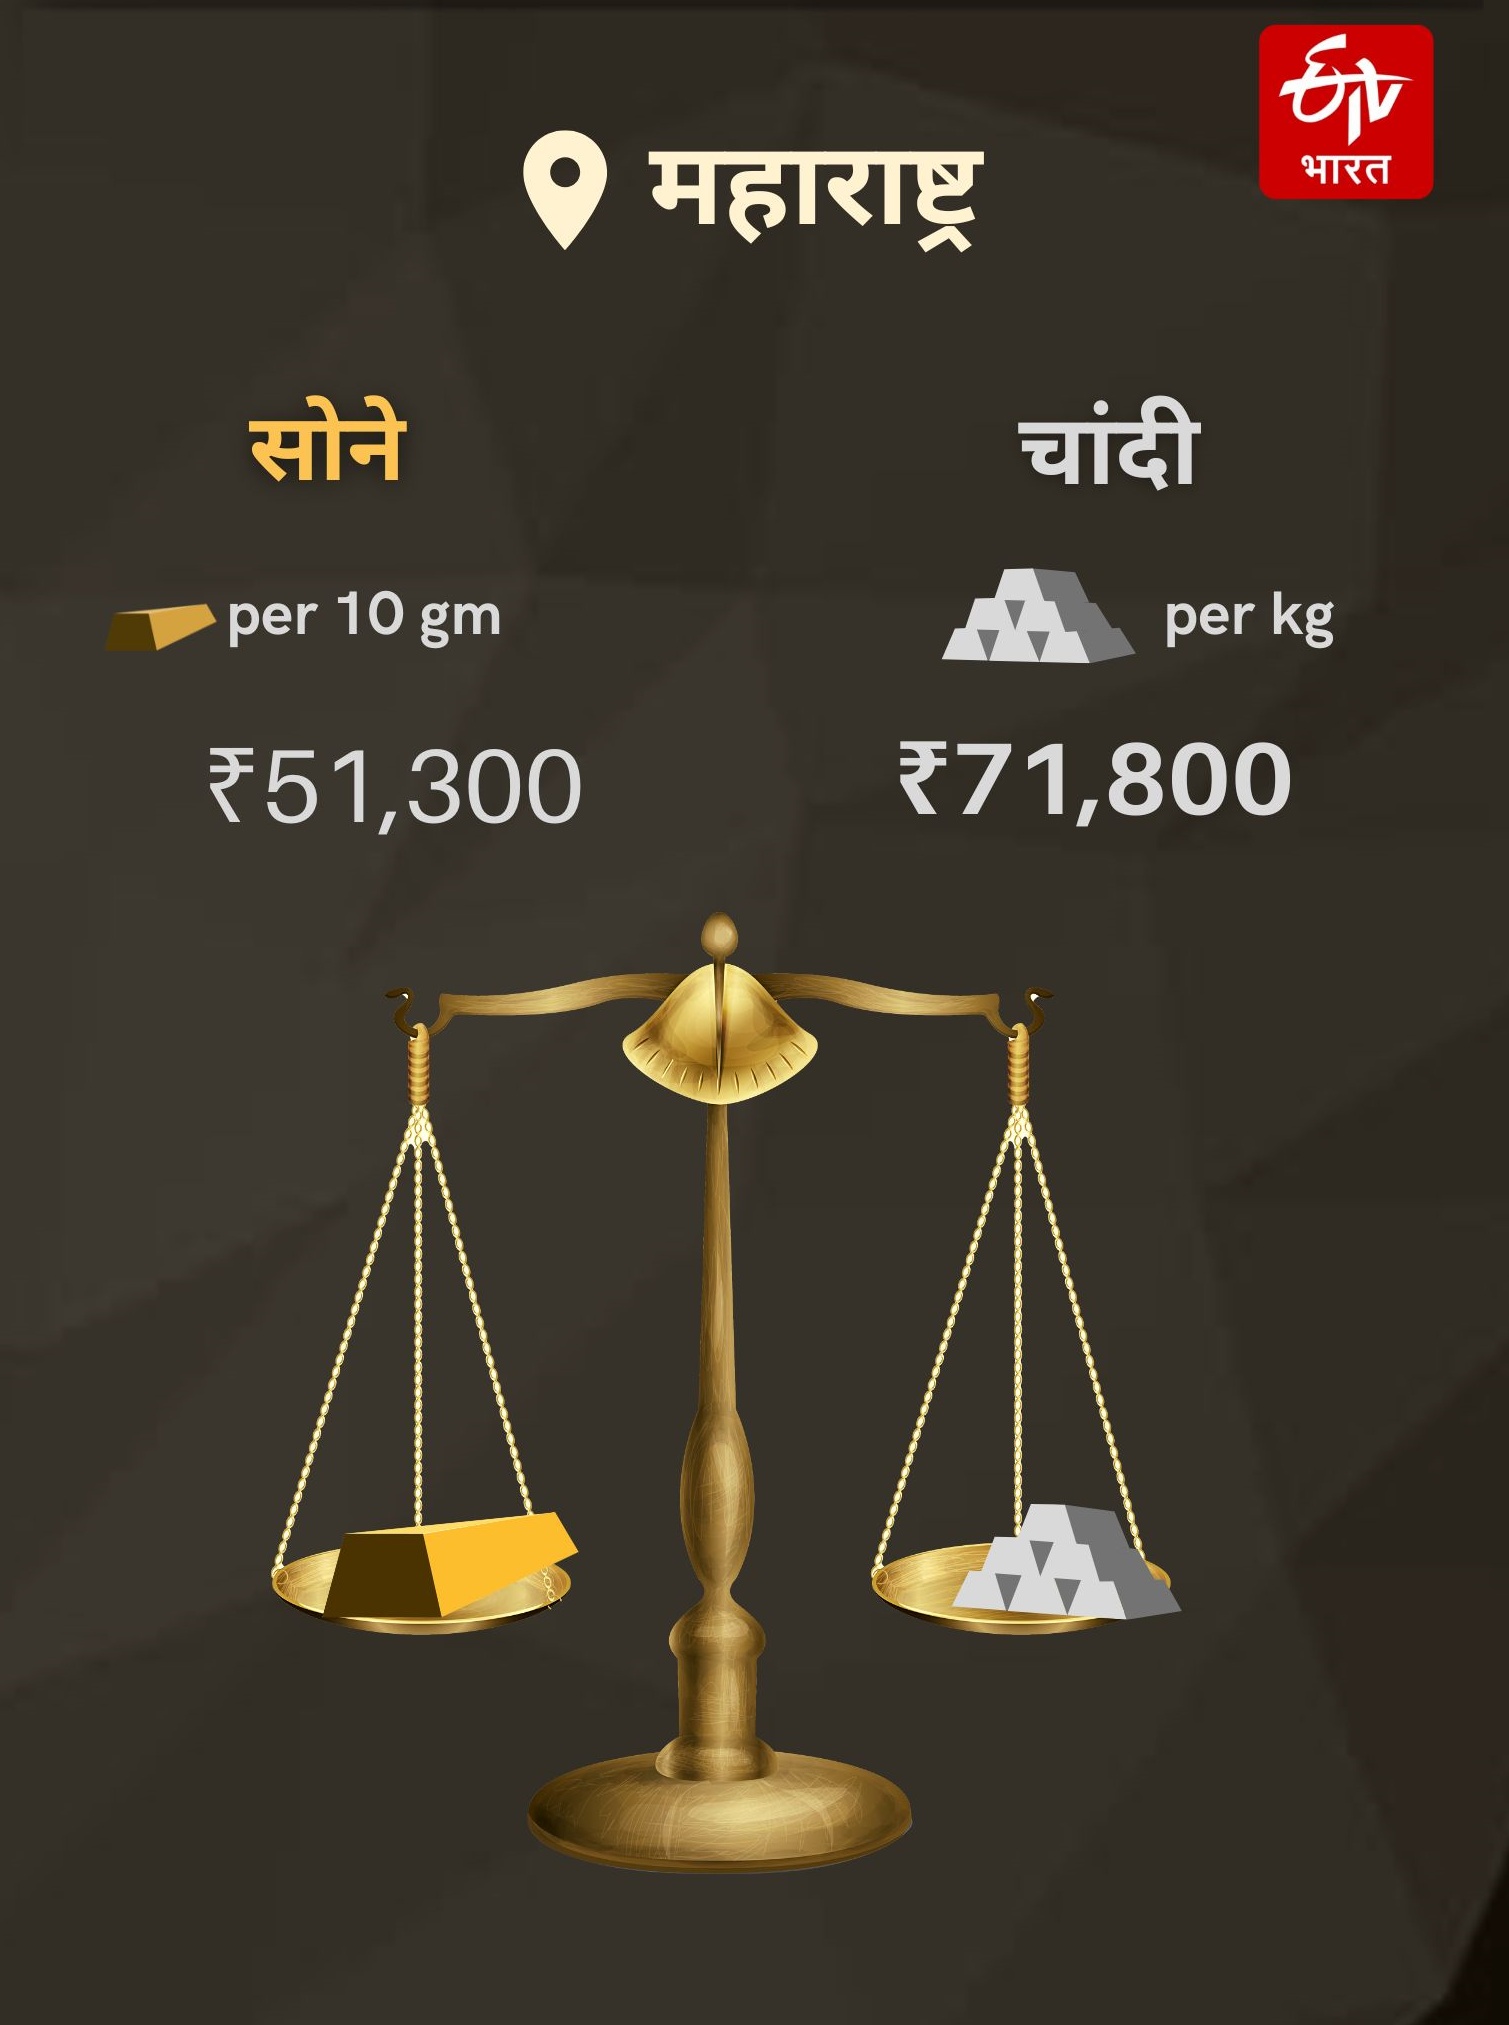 22 Carat Gold Price Per Gram in India